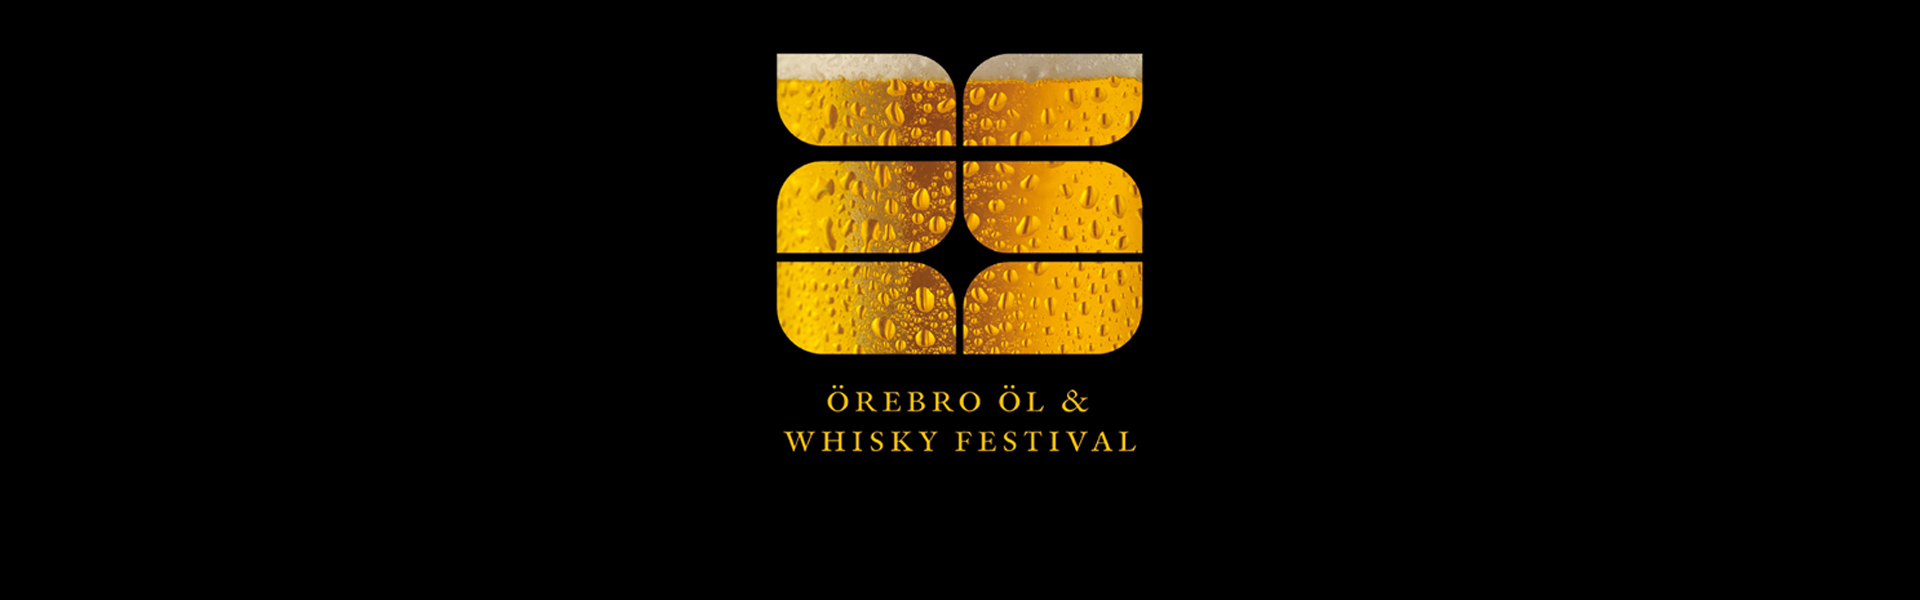 Örebro Öl- och Whisky Festival 2019